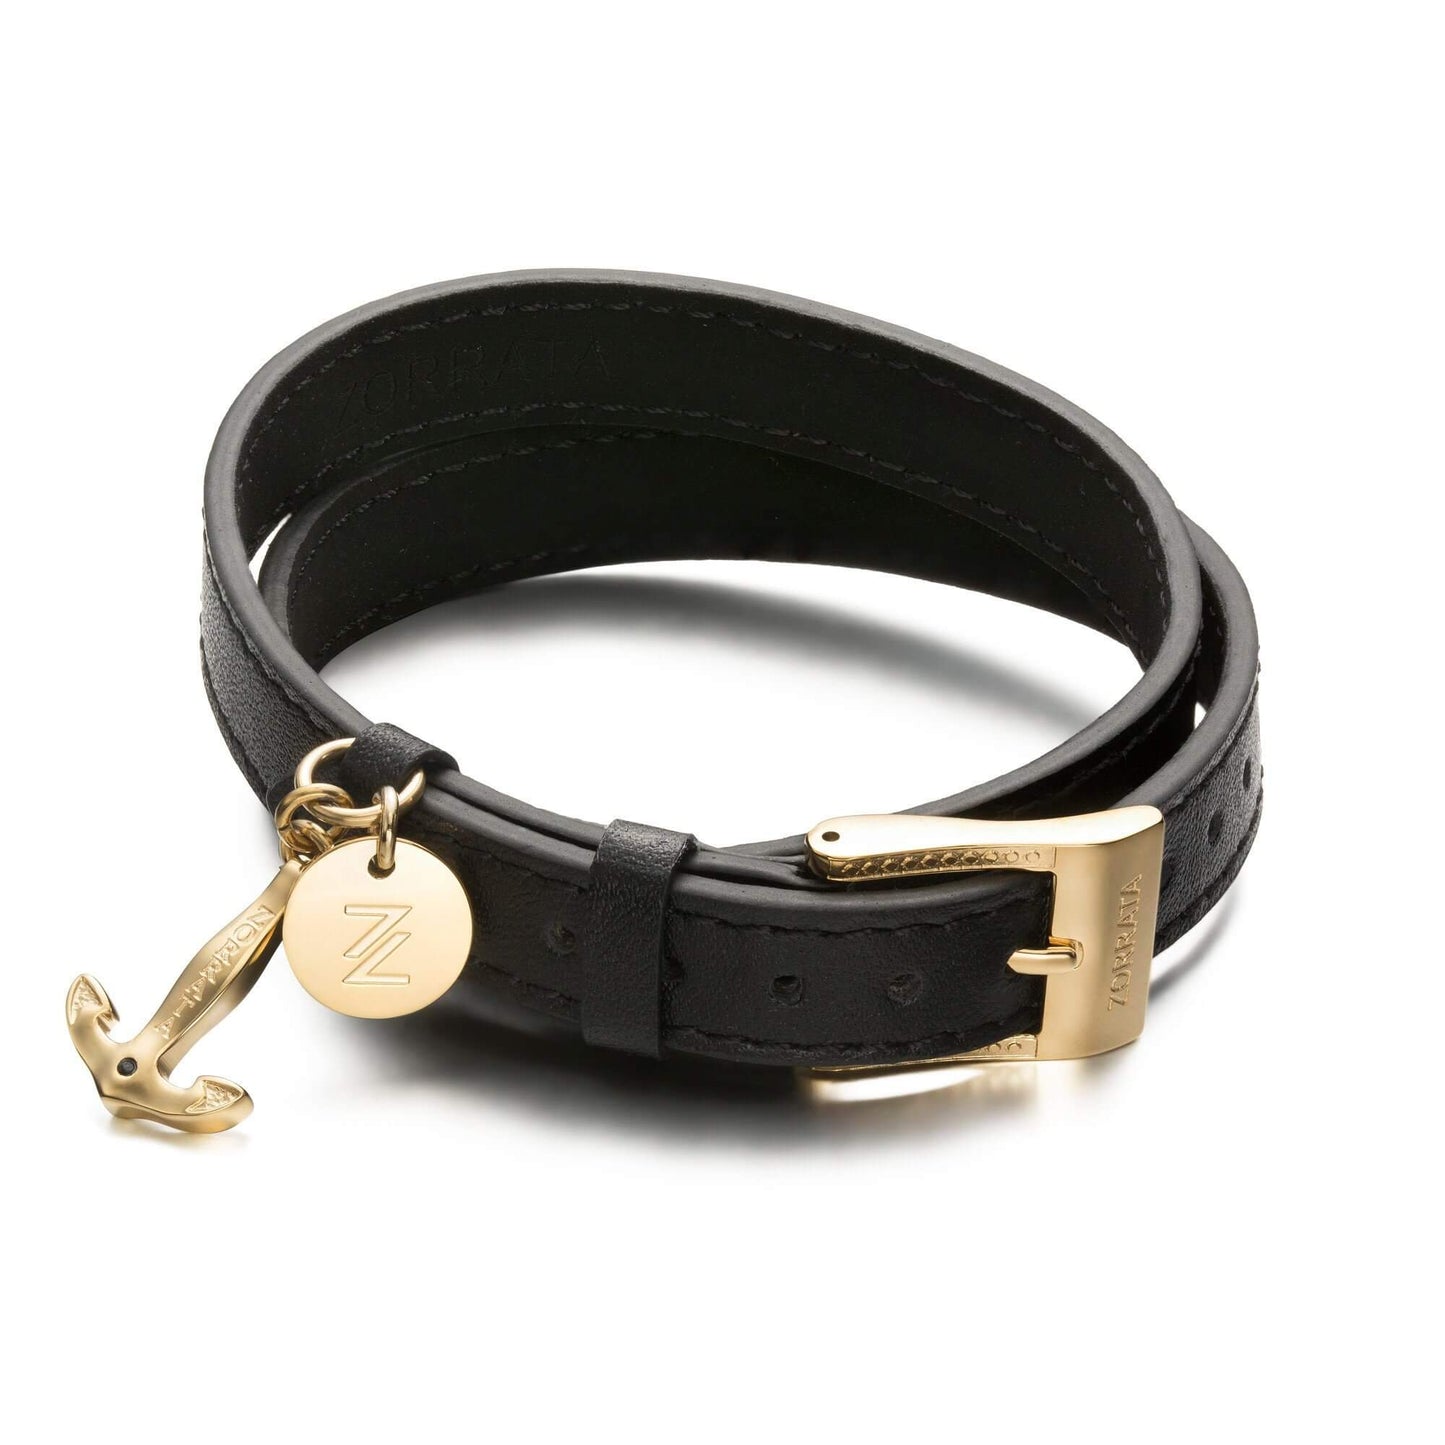 Anchor belt bracelet - gold